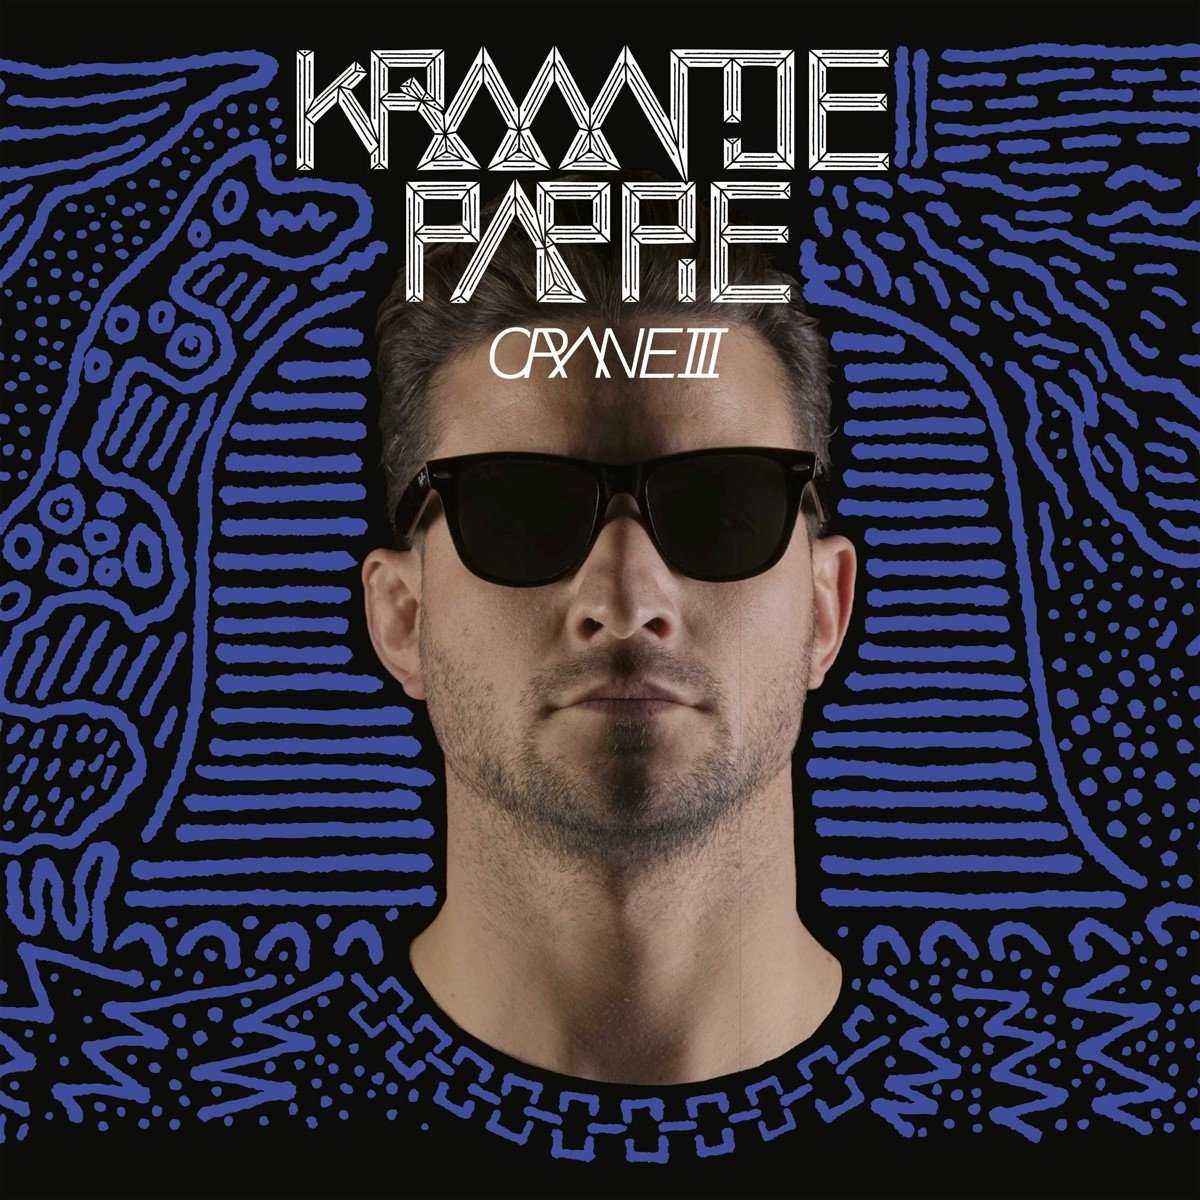 Kraantje Pappie - Crane III (CD) - Kraantje Pappie